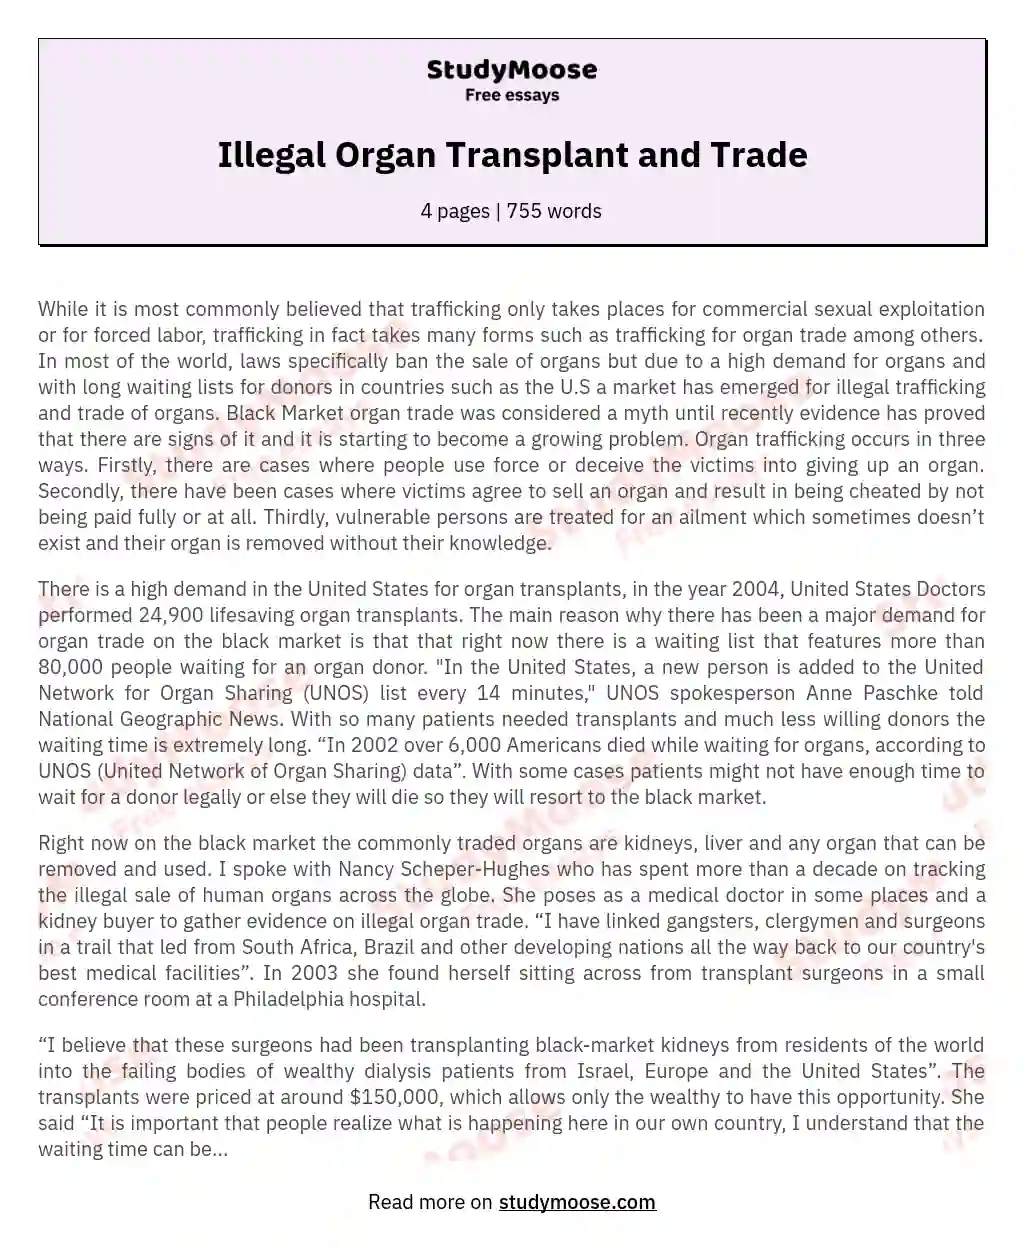 Illegal Organ Transplant and Trade essay